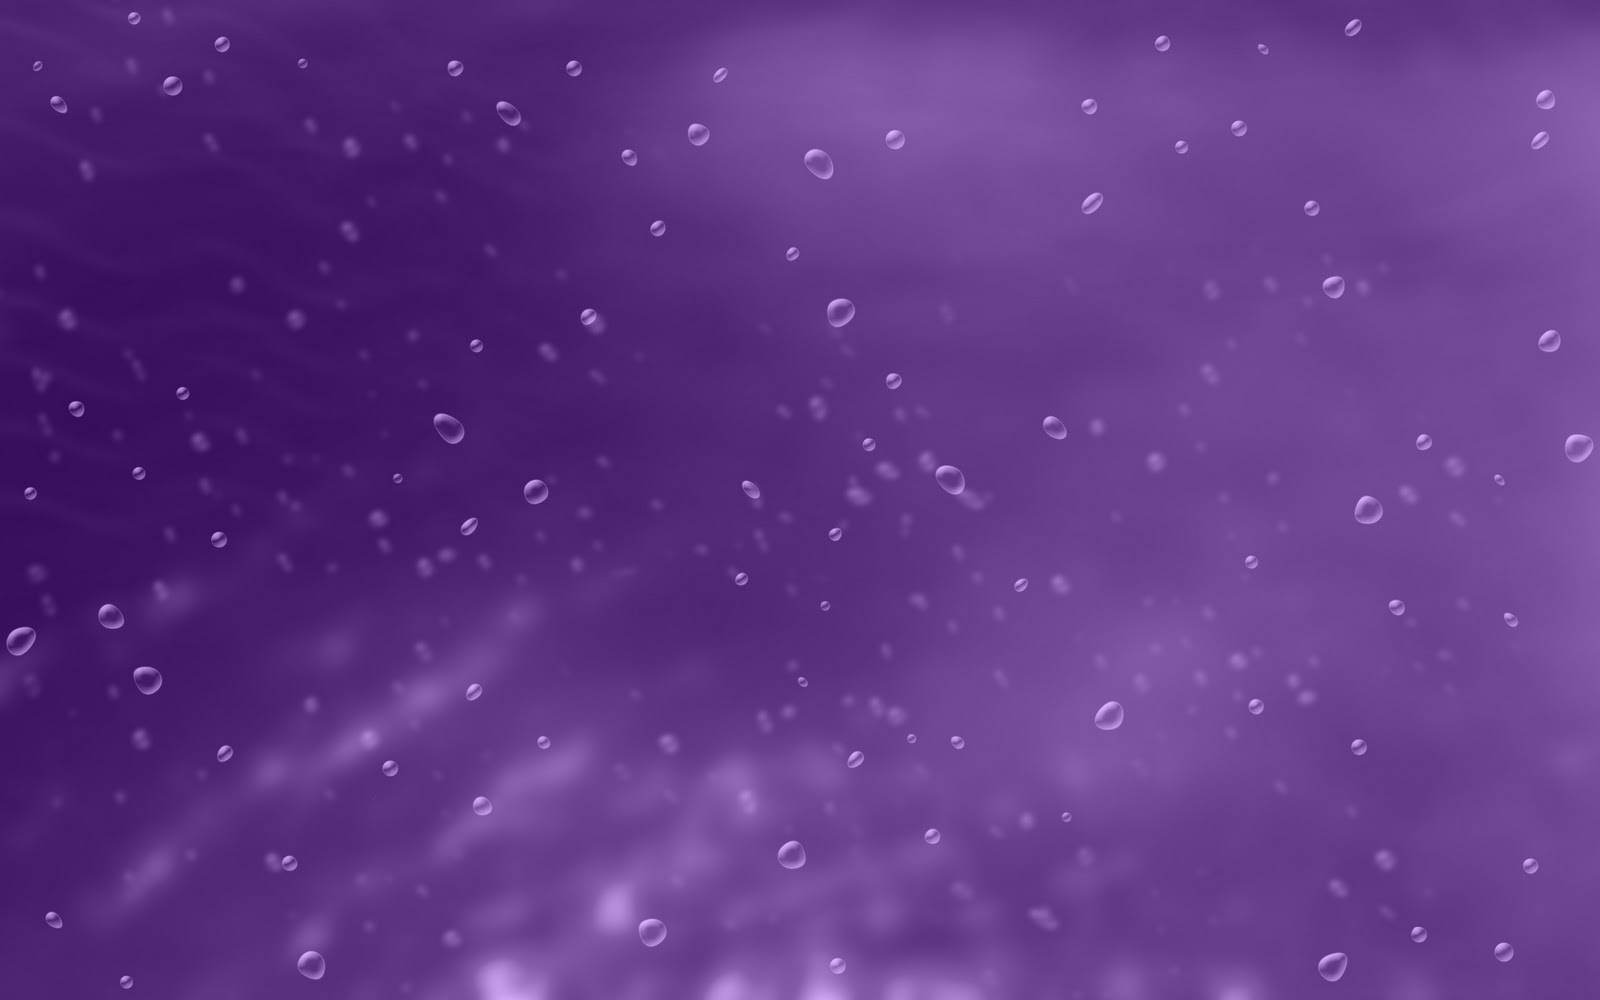 HD purple wallpapers | Peakpx